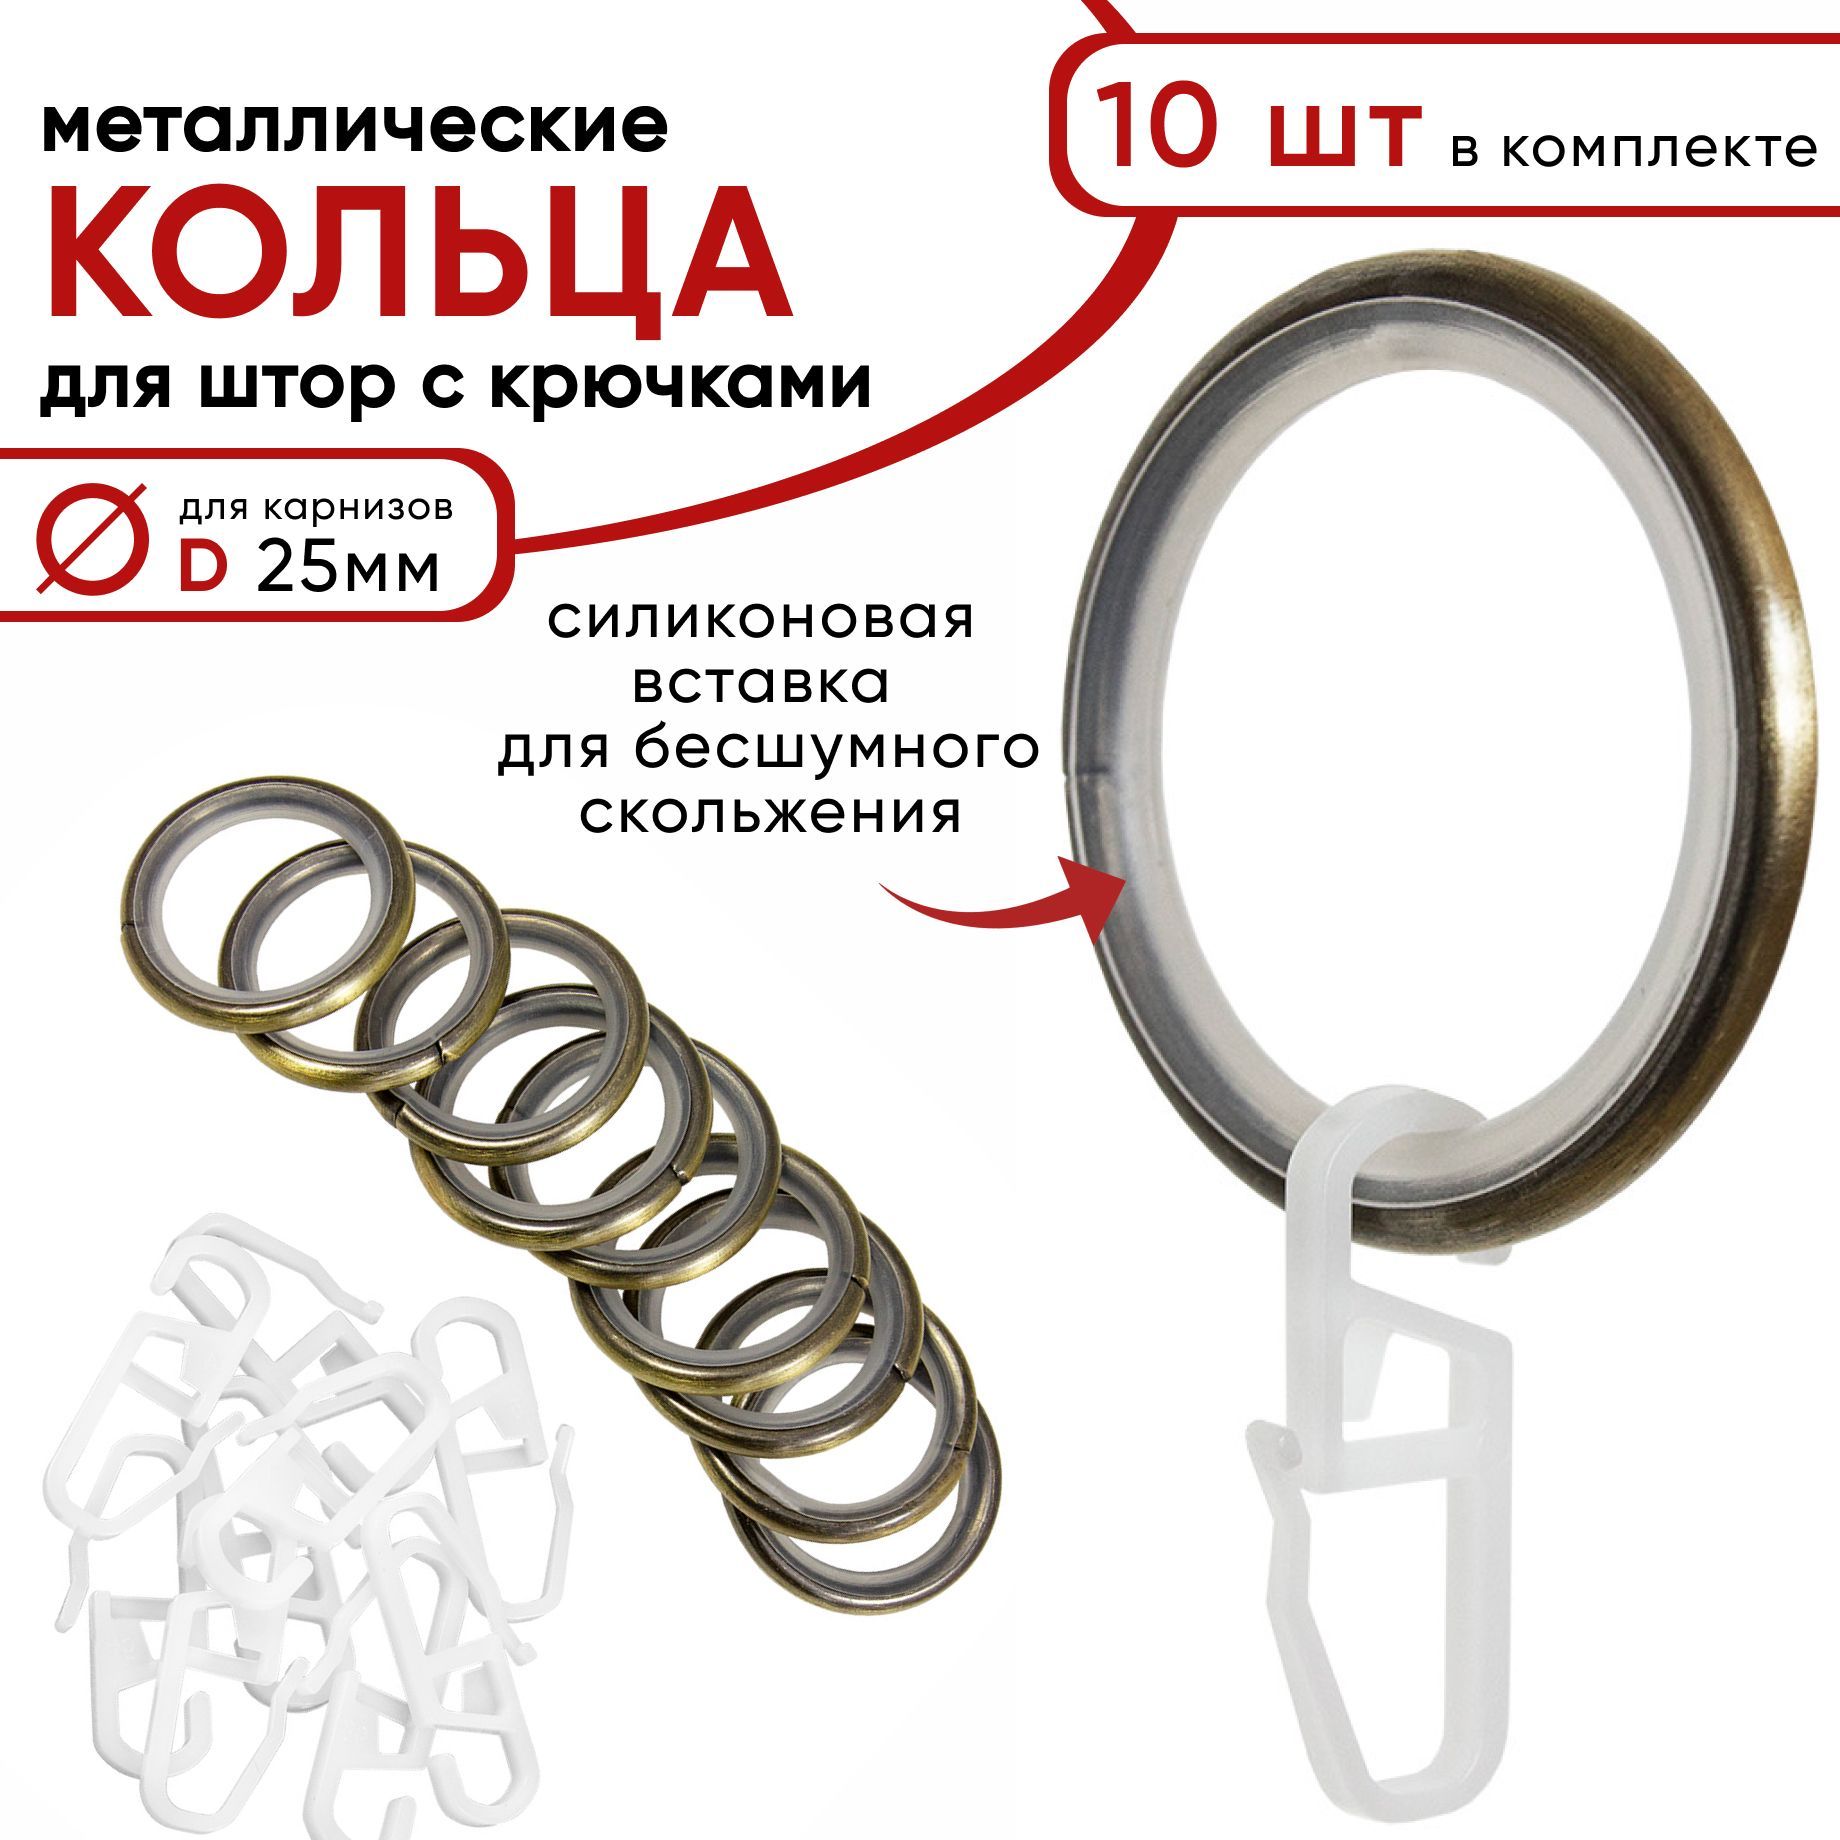 Металлические кольца для штор с крючками для карнизов D25 бесшумные бронза 10 шт